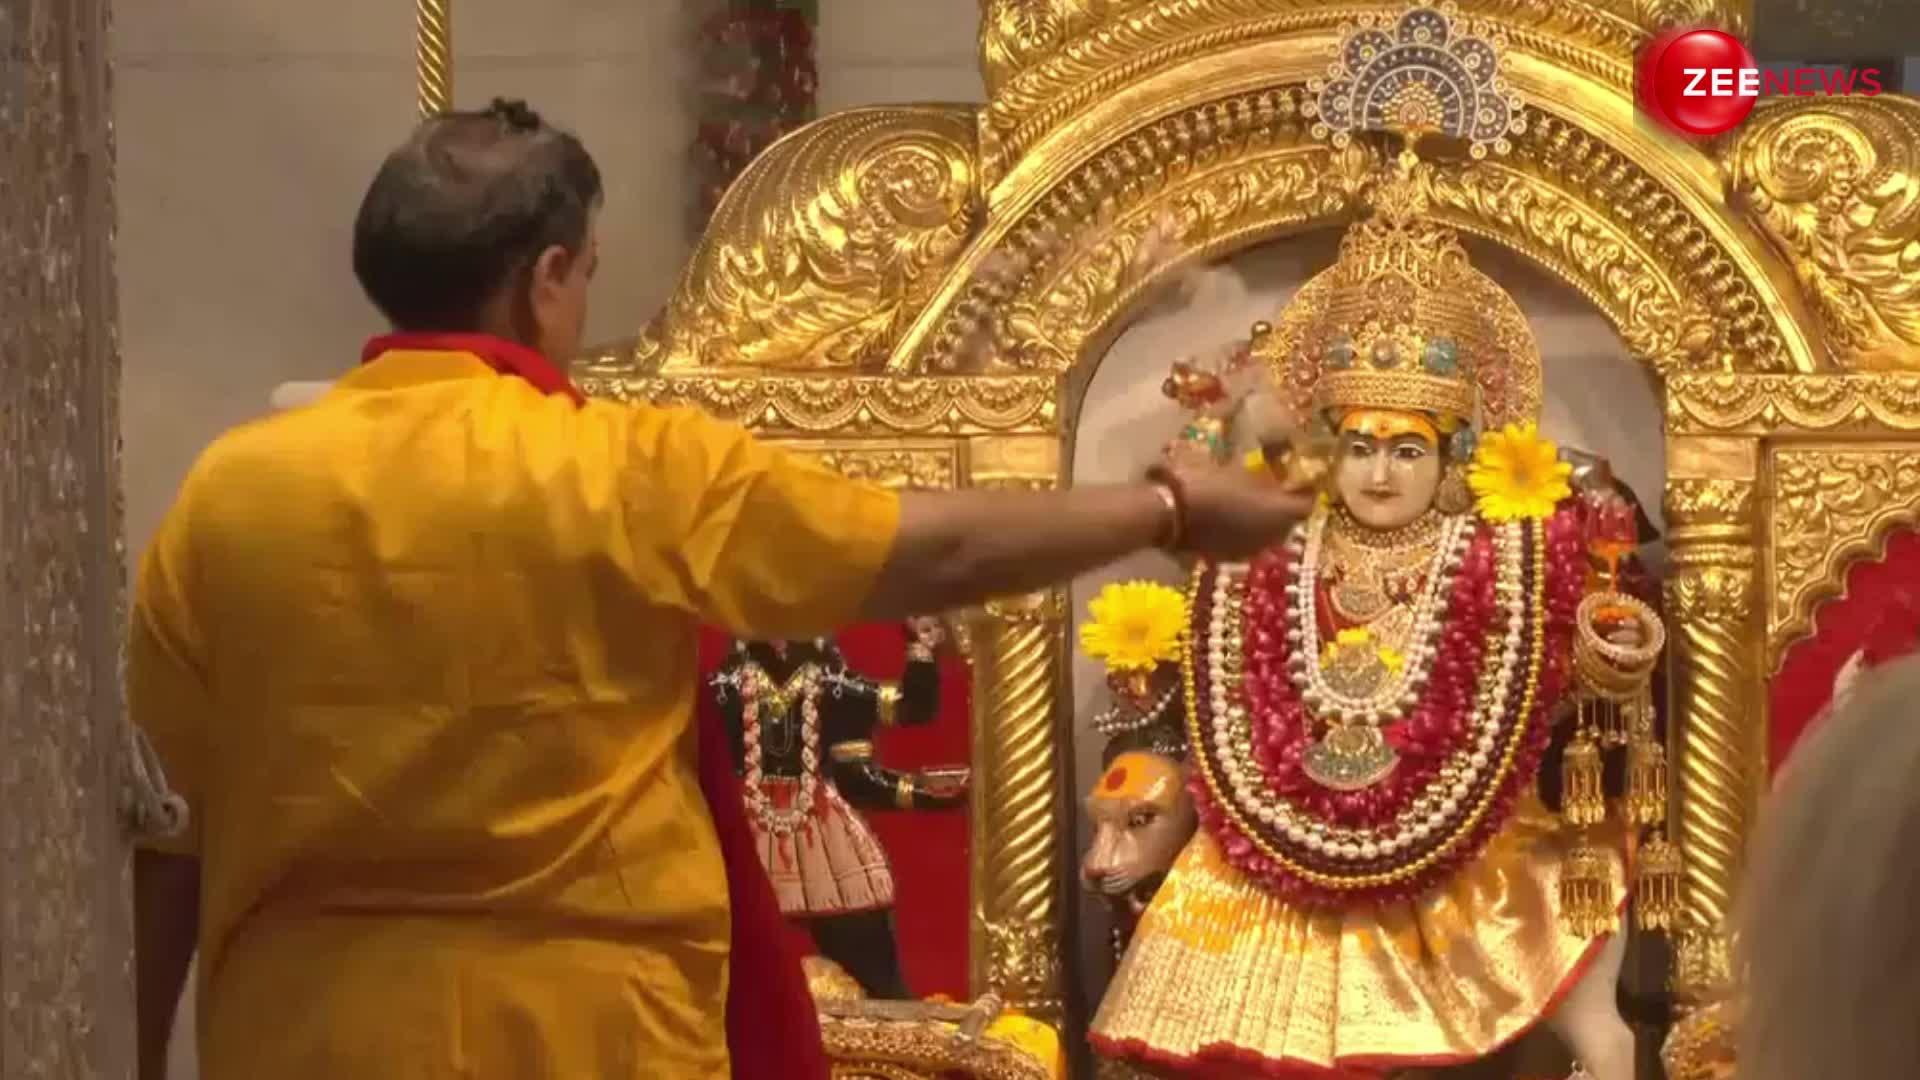 Chaitra Navratri: झंडेवालान मंदिर में नवरात्रि के तीसरे दिन हुई मंत्रमुग्ध कर देने वाली आरती, श्रद्धालुओं की उमड़ी भीड़